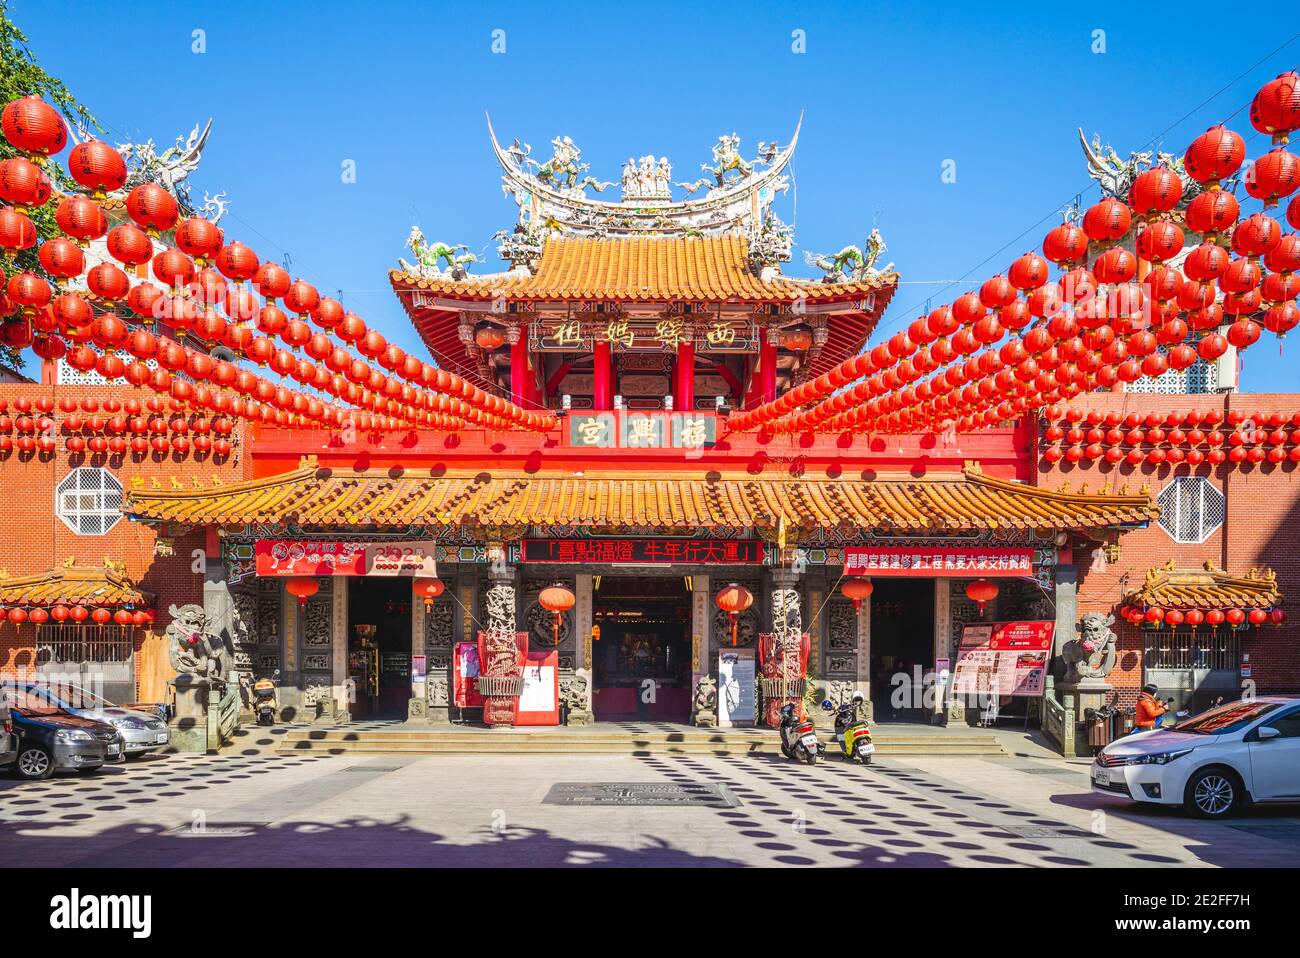 13 janvier 2021 : le temple de Fuxing, un temple à xiluo, yunlin, taïwan, a été construit en 1723 pour y consacrer la statue de Mazu provenant de Chine en 1717. Ceci Banque D'Images